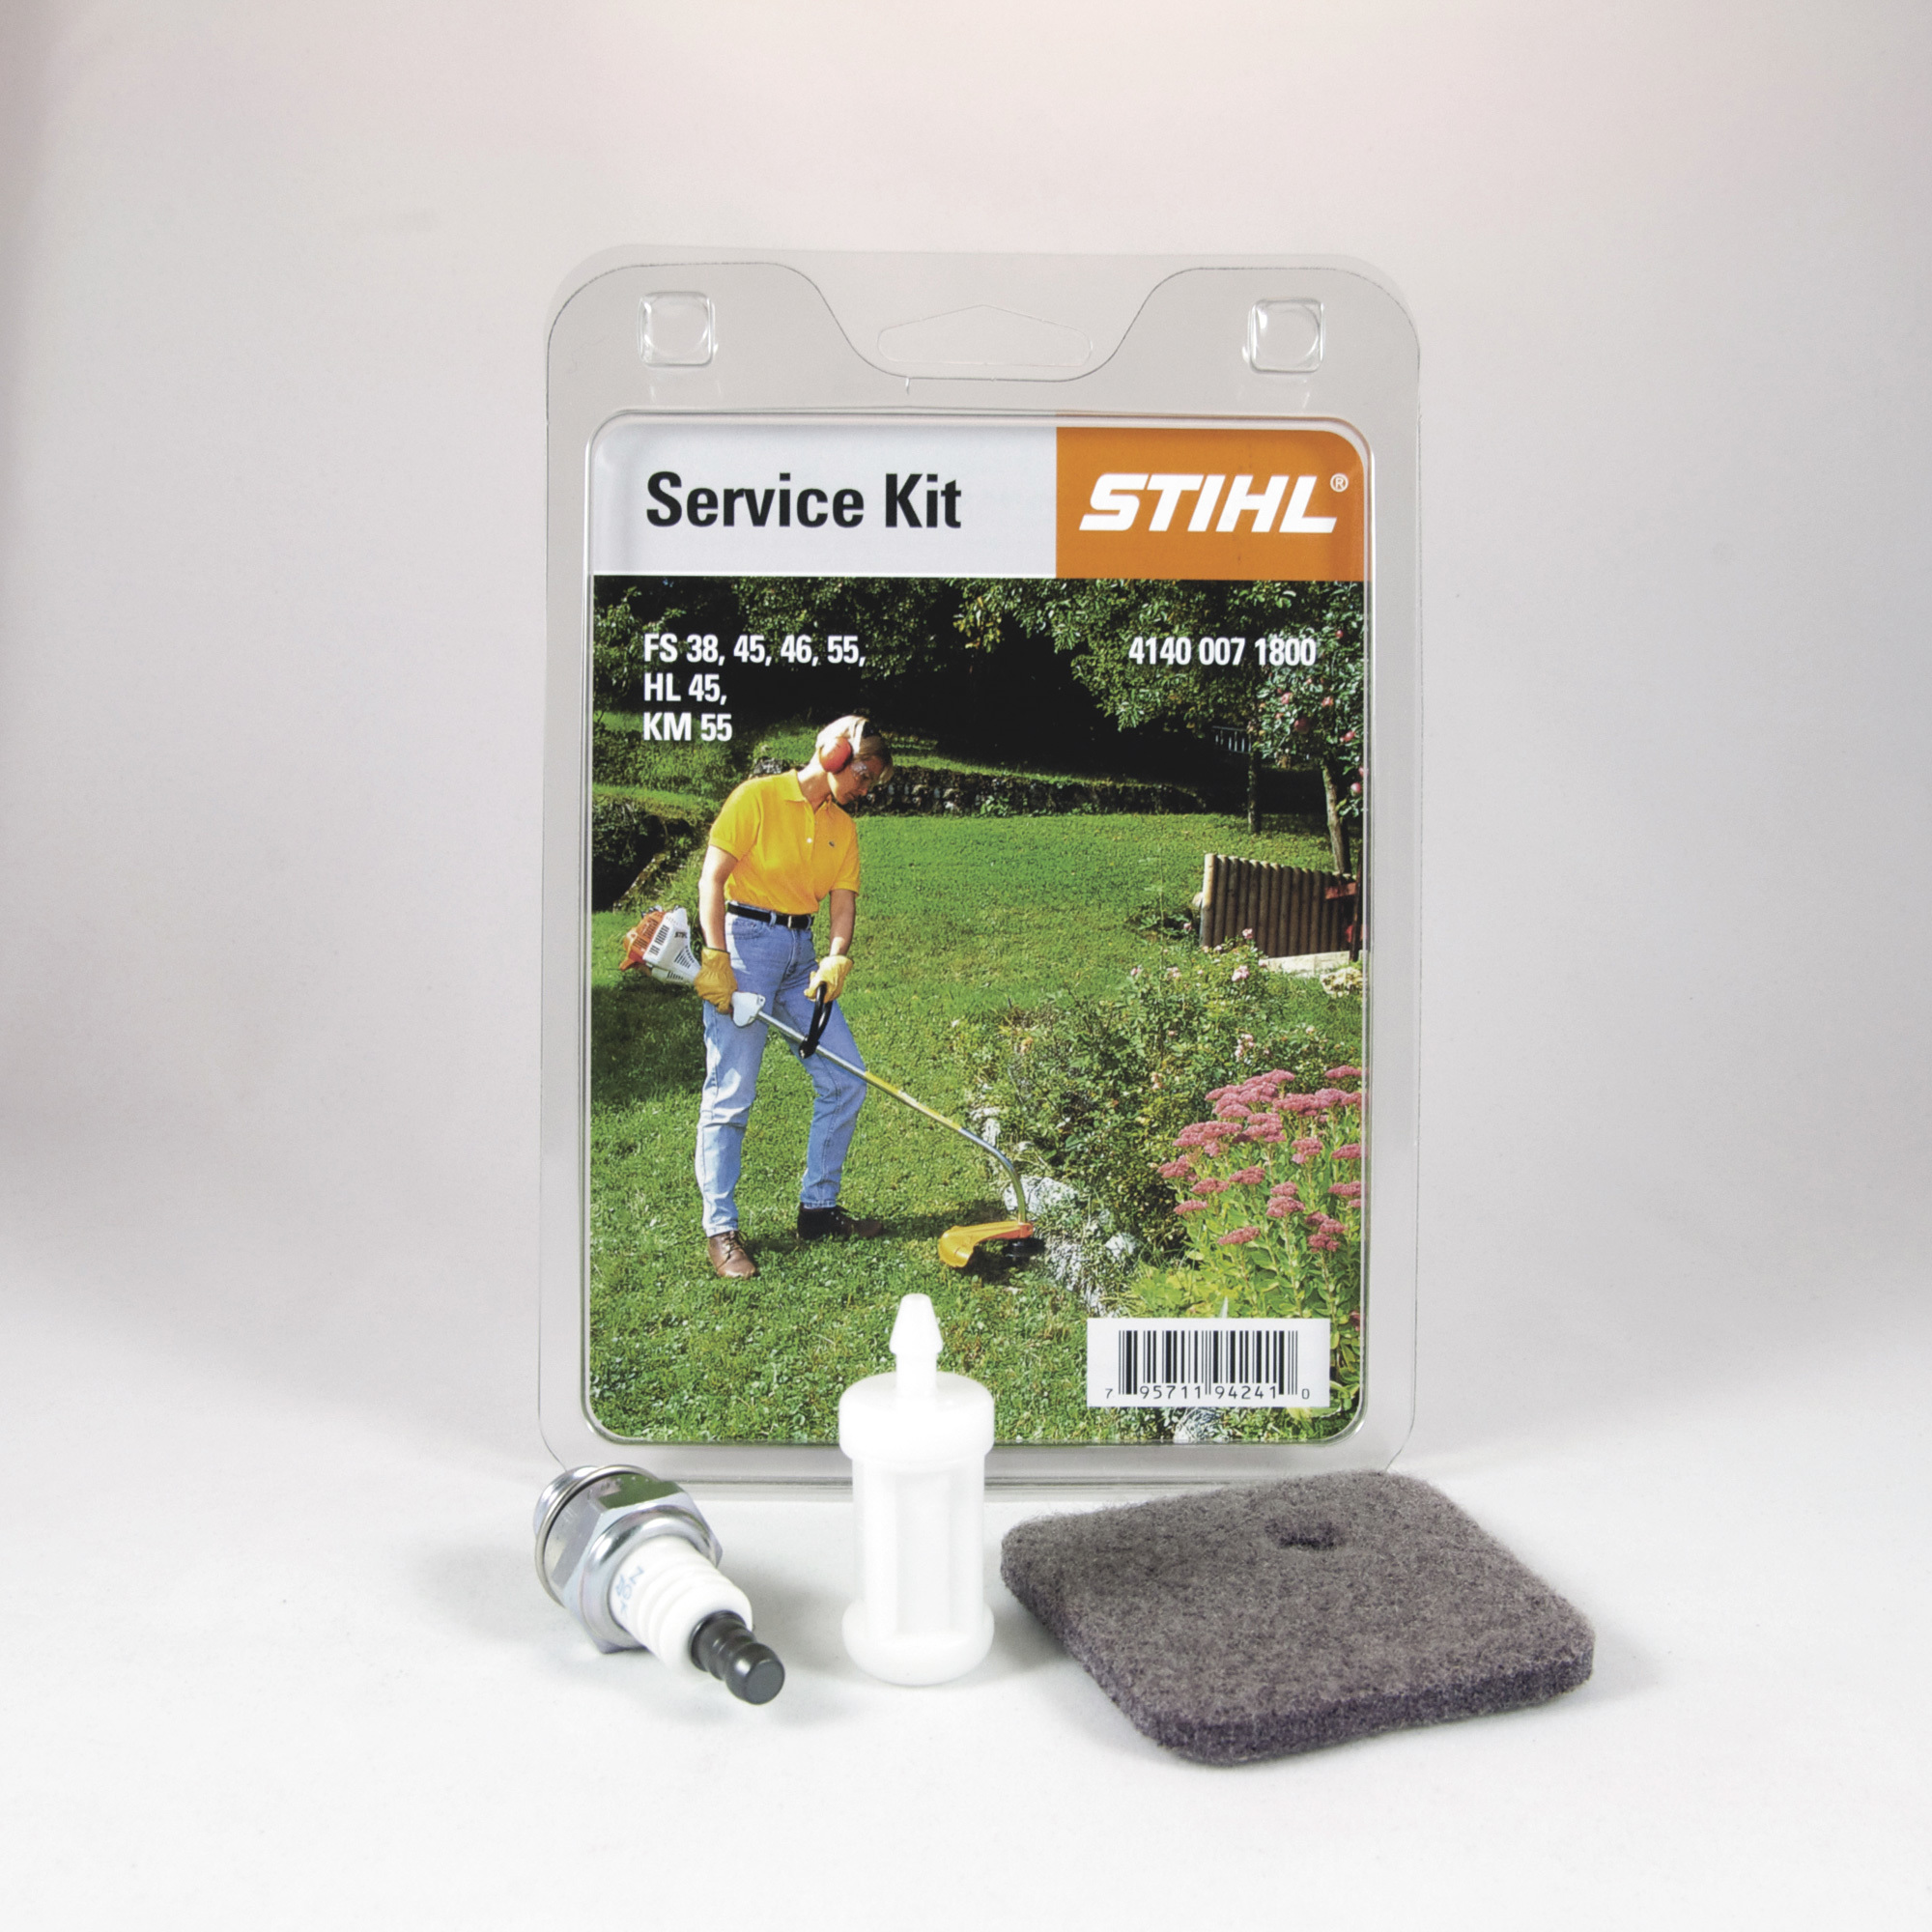 STIHL 4140 Trimmer Service Kit â Fits Trimmer Models FS 45, FS 46, FS 55 and KM 55